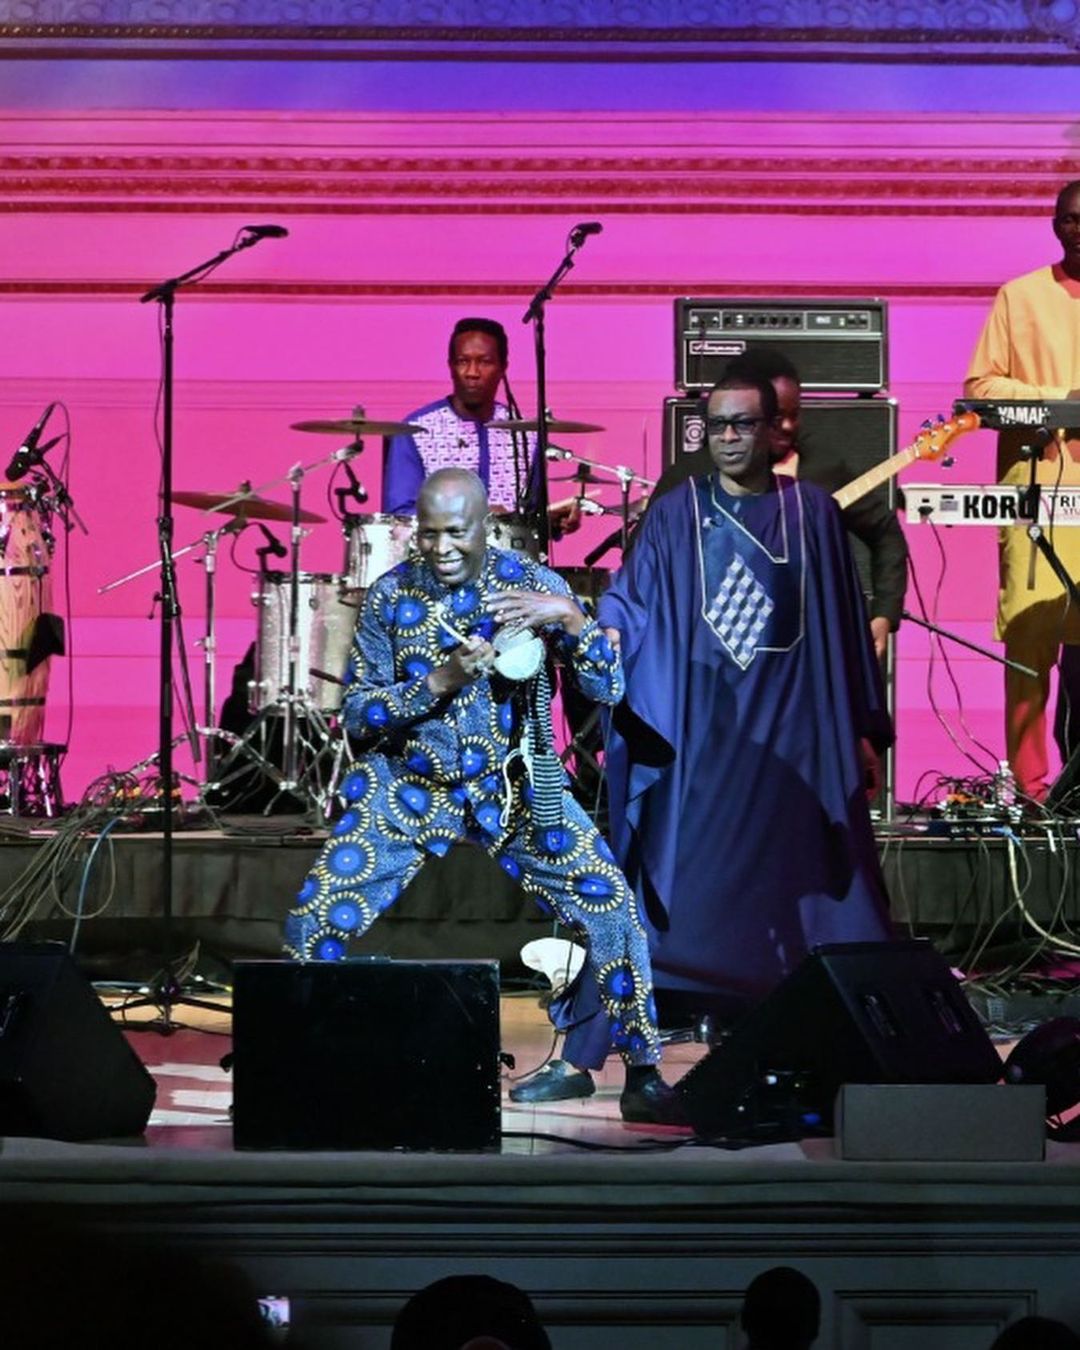 Images / Prestation de Youssou Ndour à Carnegie Hall de New York, vendredi passé